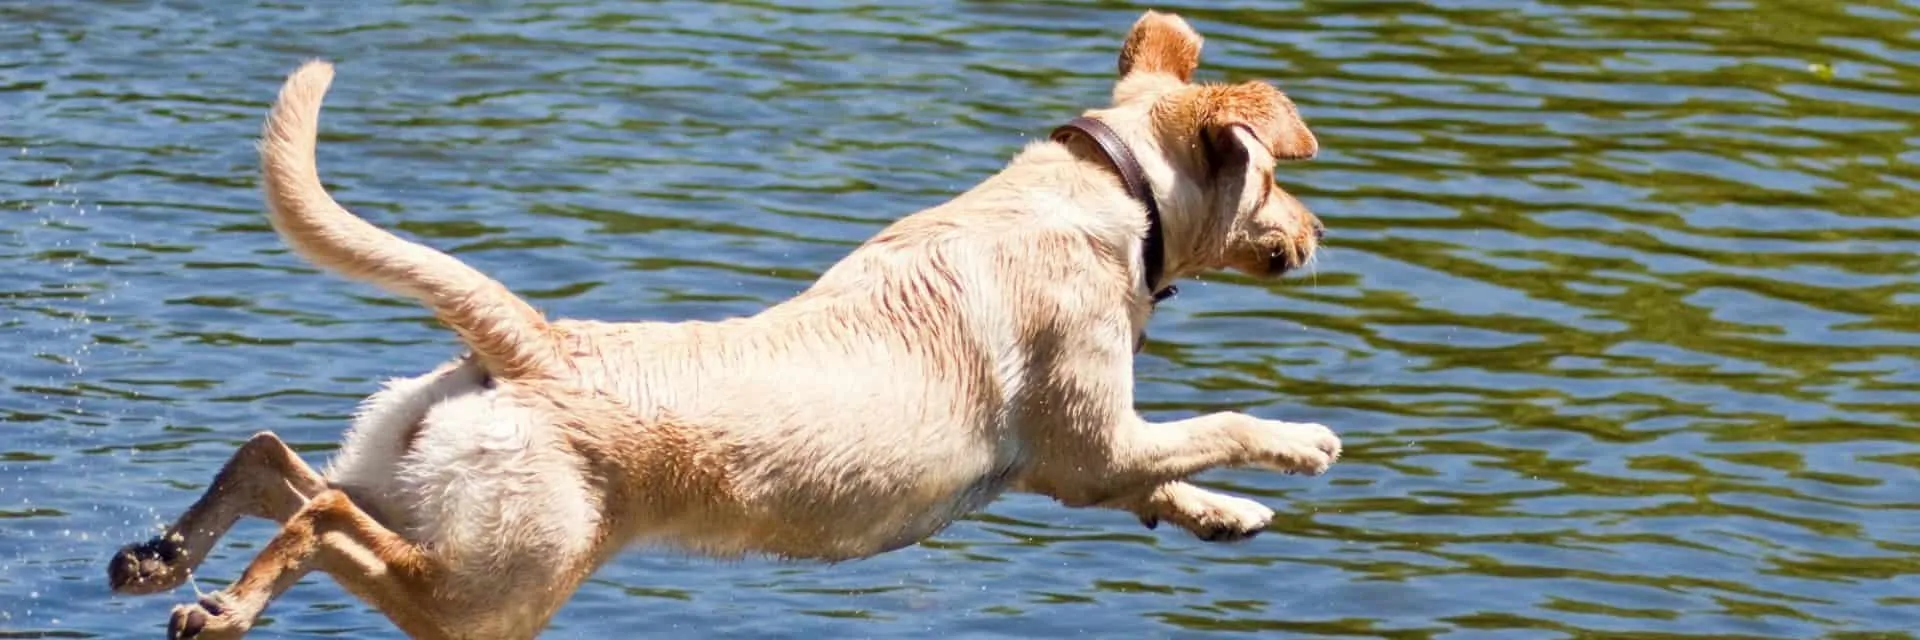 Dog Jumping into Lake